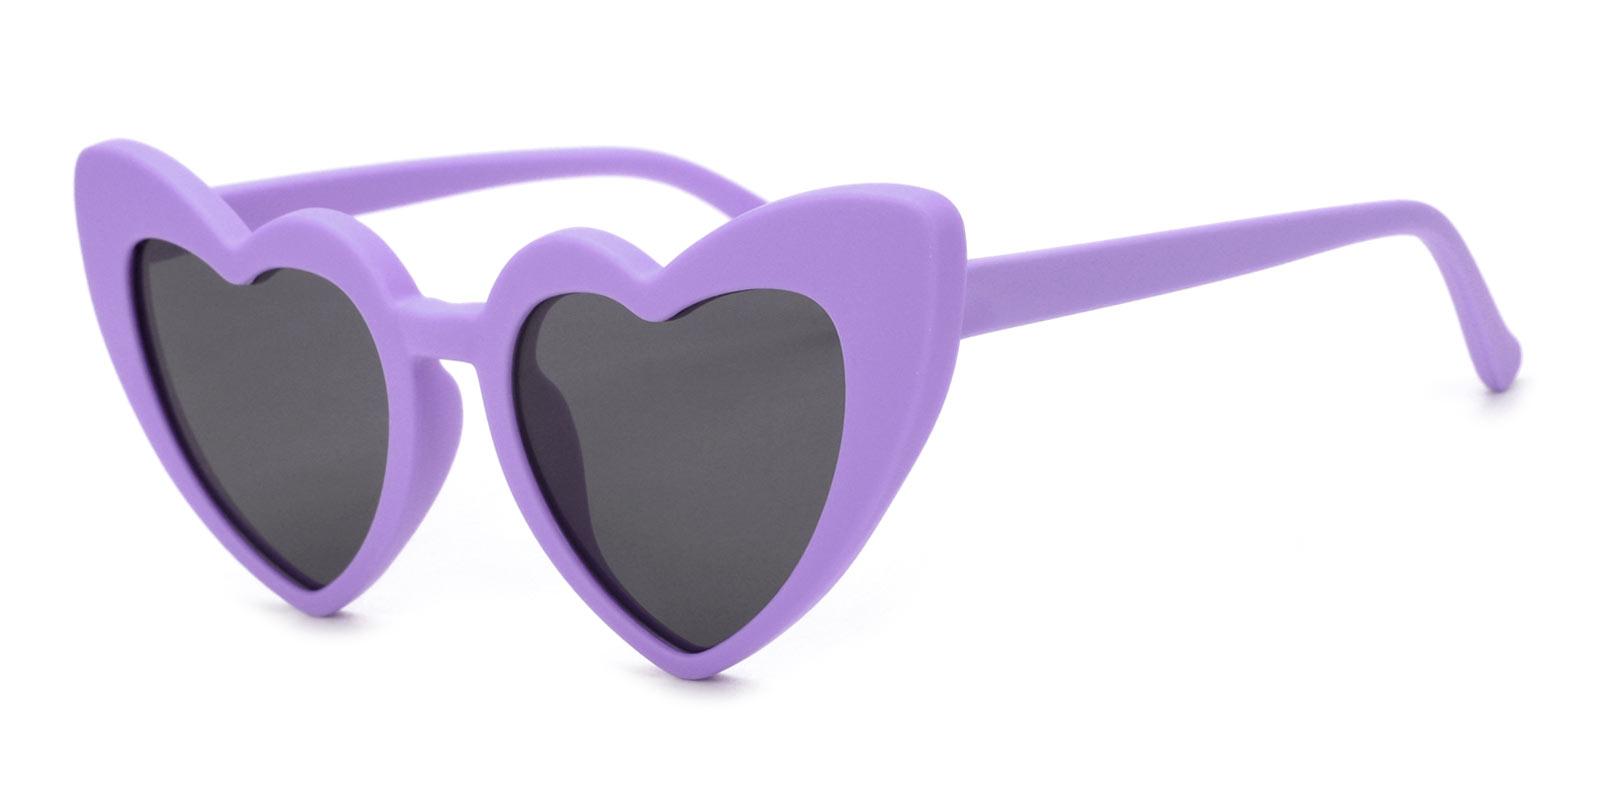 Retta-Purple-Geometric-TR-Sunglasses-detail